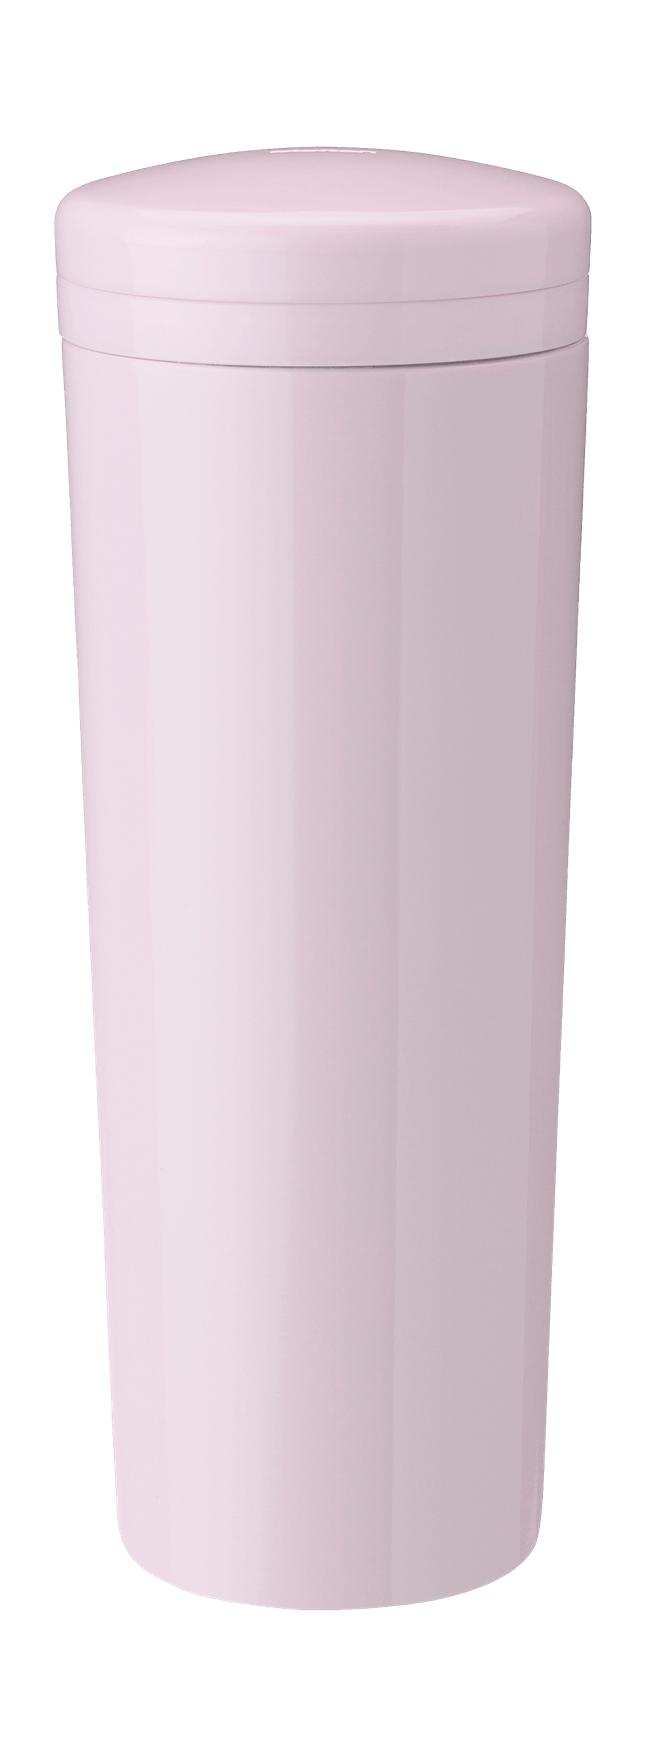 Stelton Carrie Termoflaske 0,5 L, Rose